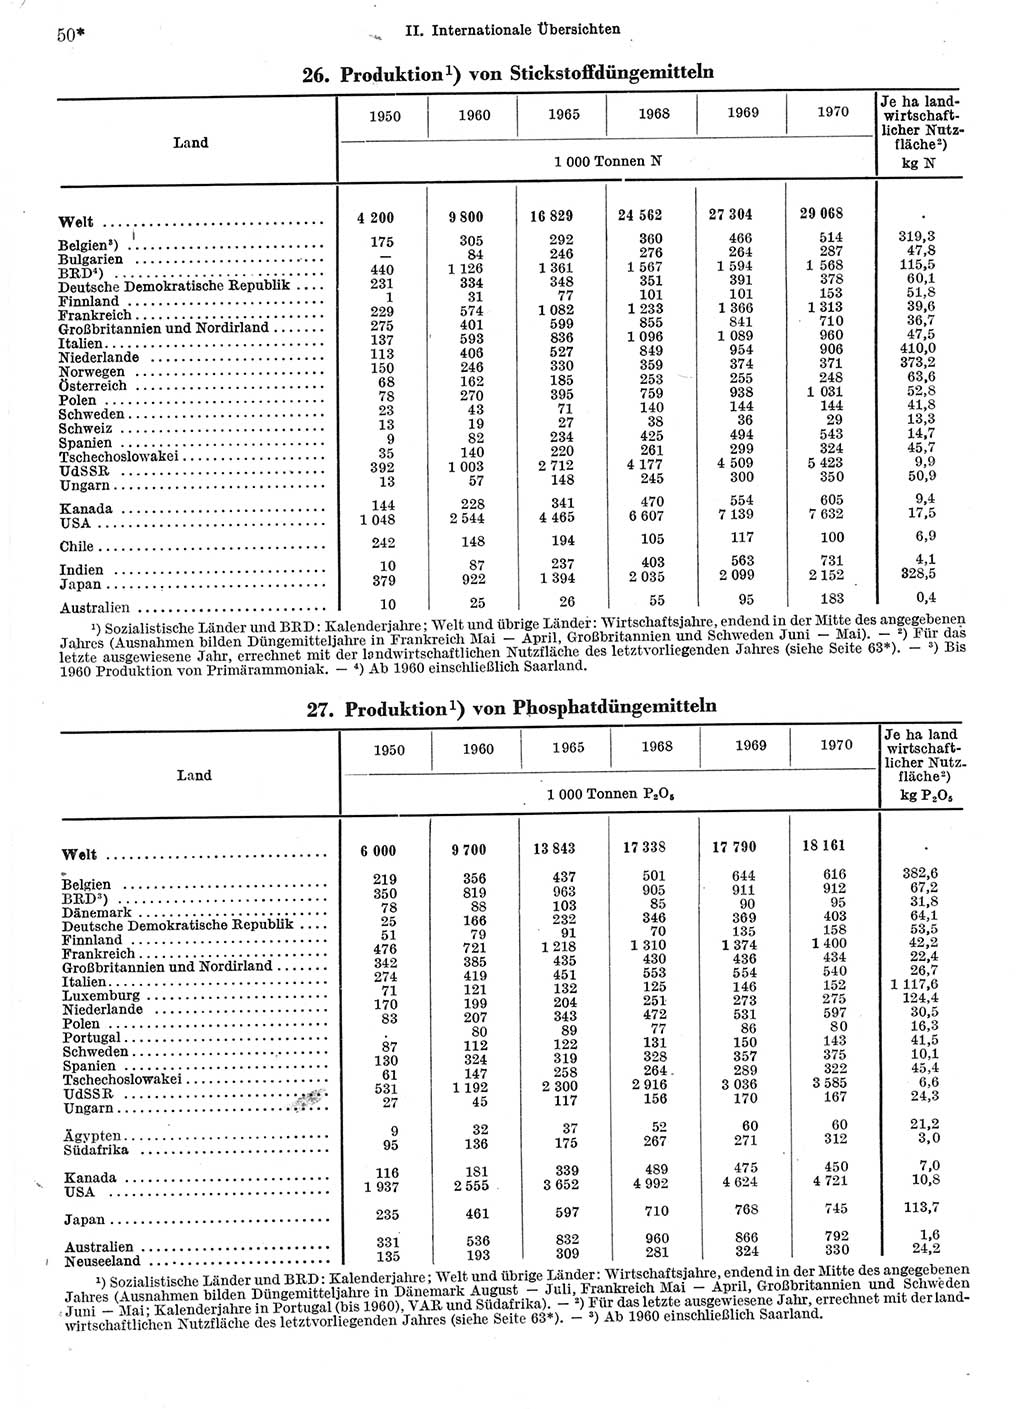 Statistisches Jahrbuch der Deutschen Demokratischen Republik (DDR) 1972, Seite 50 (Stat. Jb. DDR 1972, S. 50)